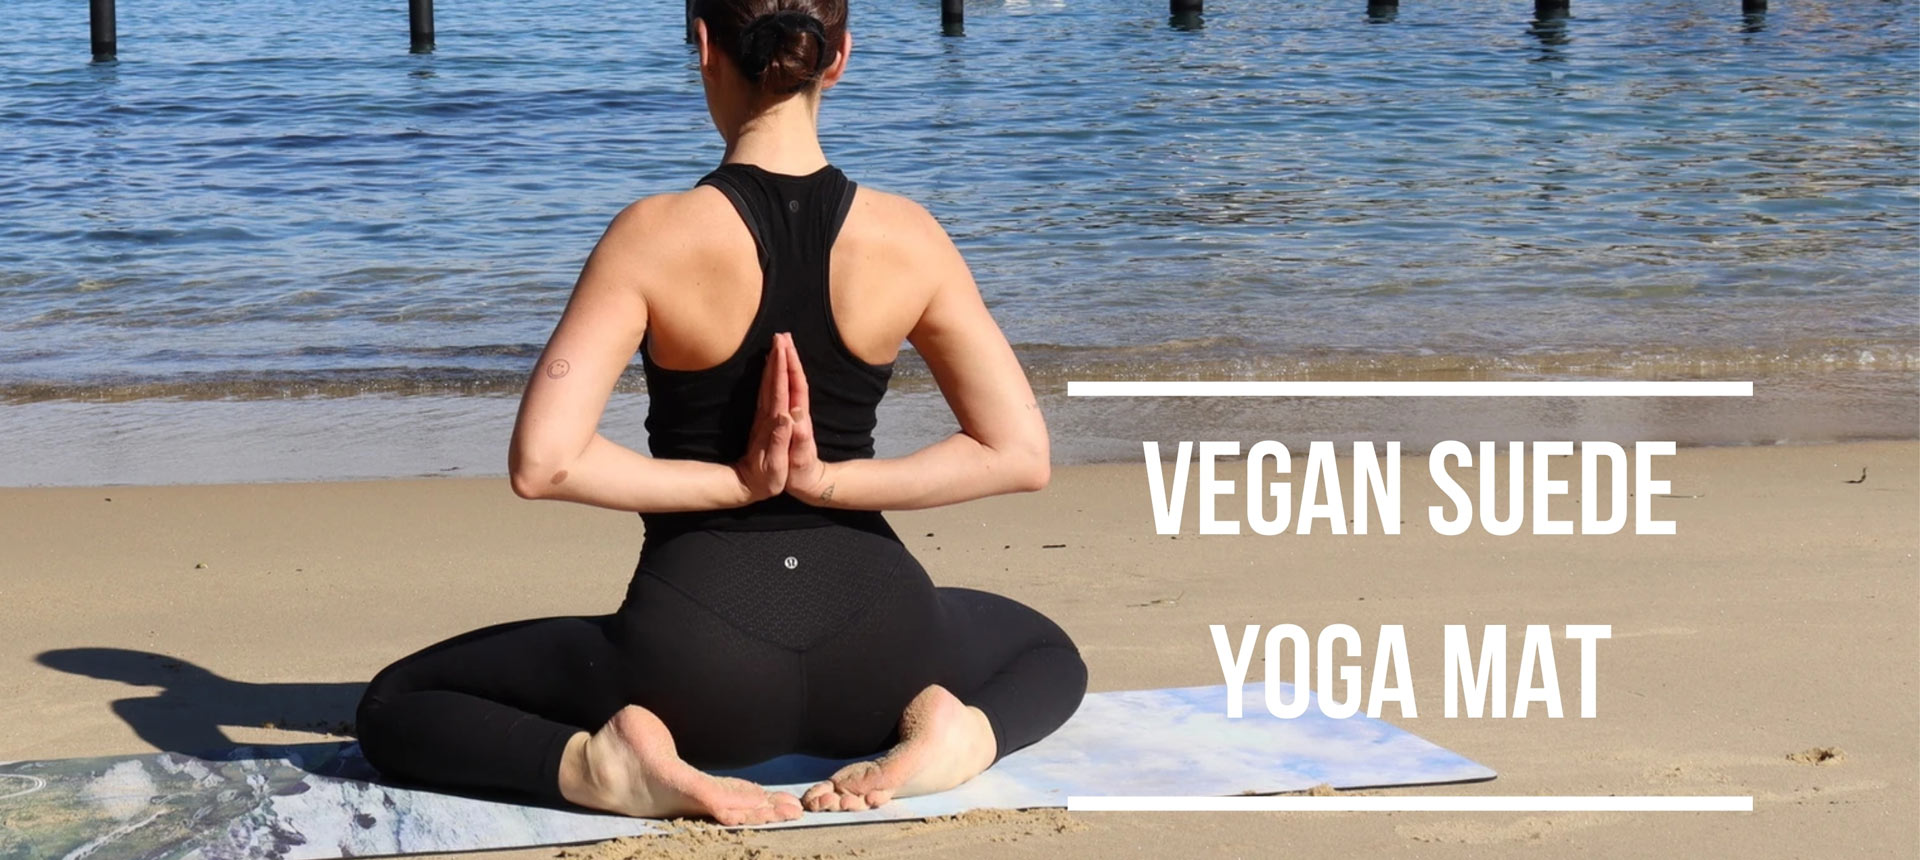 Vegan Suede Yoga Mat